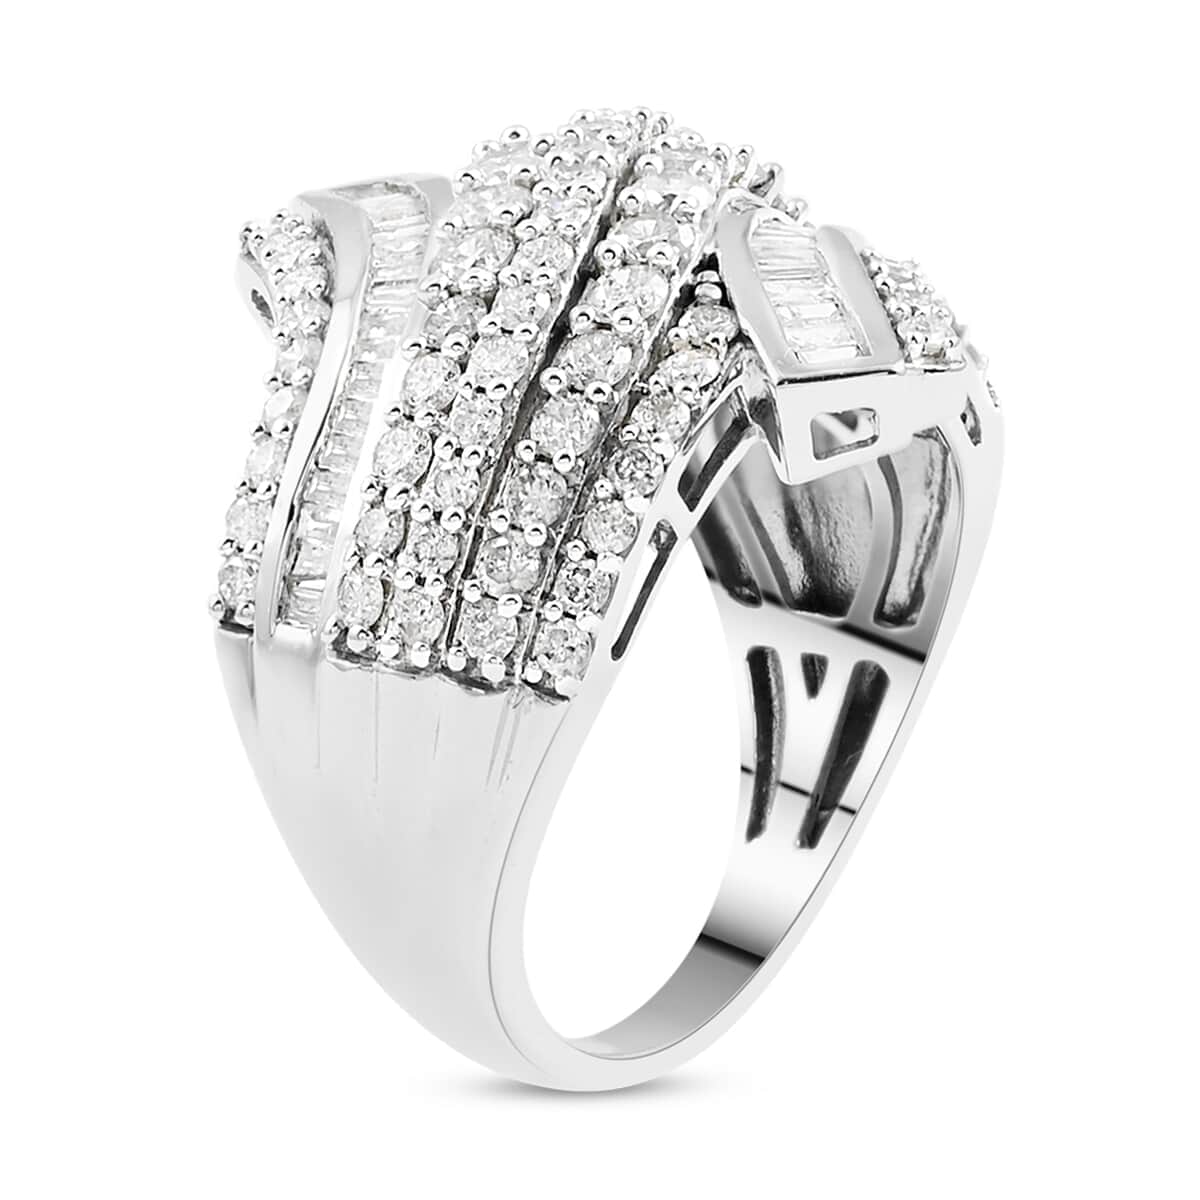 10K White Gold G-H I3 Diamond Ring (Size 7.0) 7.35 Grams 2.00 ctw image number 3